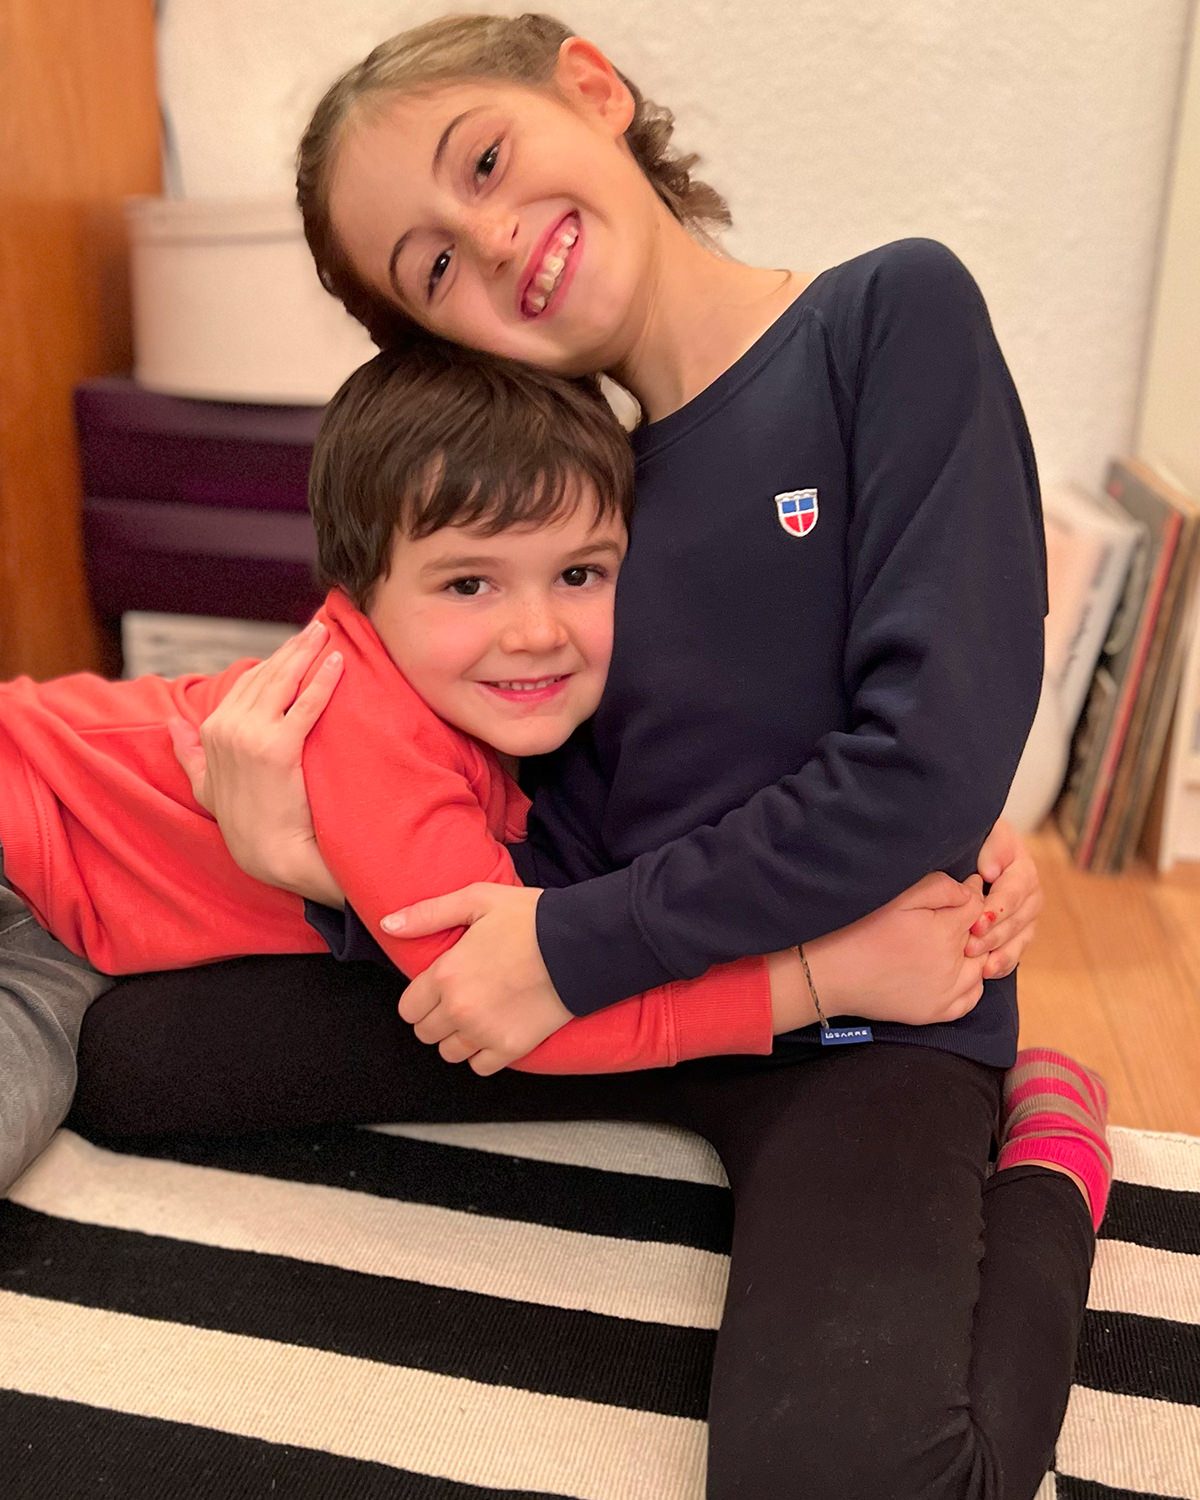 Glückliche Kinder: Leni und ihr Bruder Anton lieben ihr Shirt mit Saarland-Wappen!